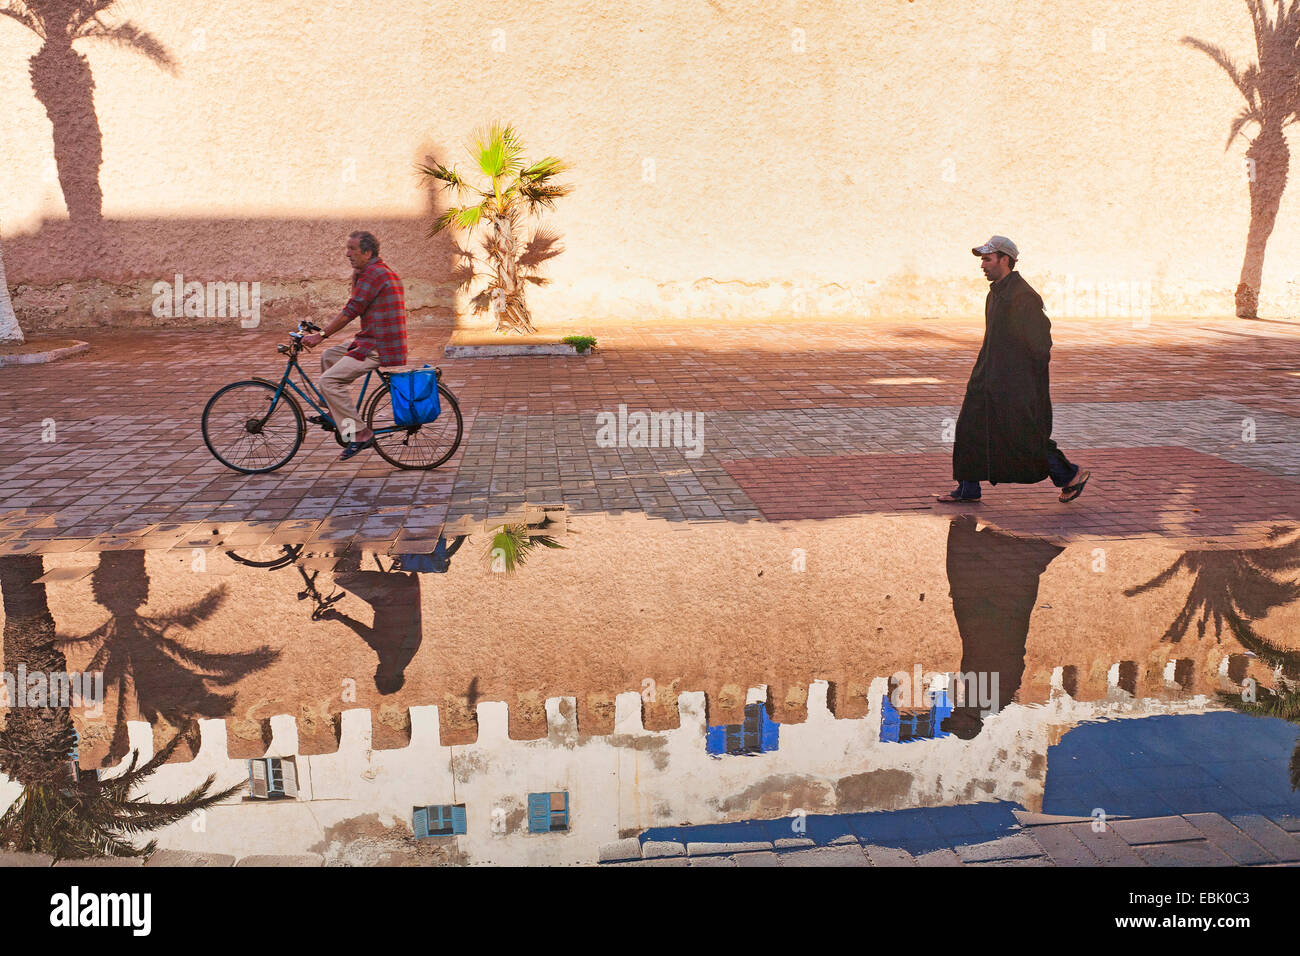 Radfahrer, Fußgänger, eine historische Stadt Wand reflektiert in Pfütze Wasser nach Ain Dusche, Marokko Essaouira Stockfoto